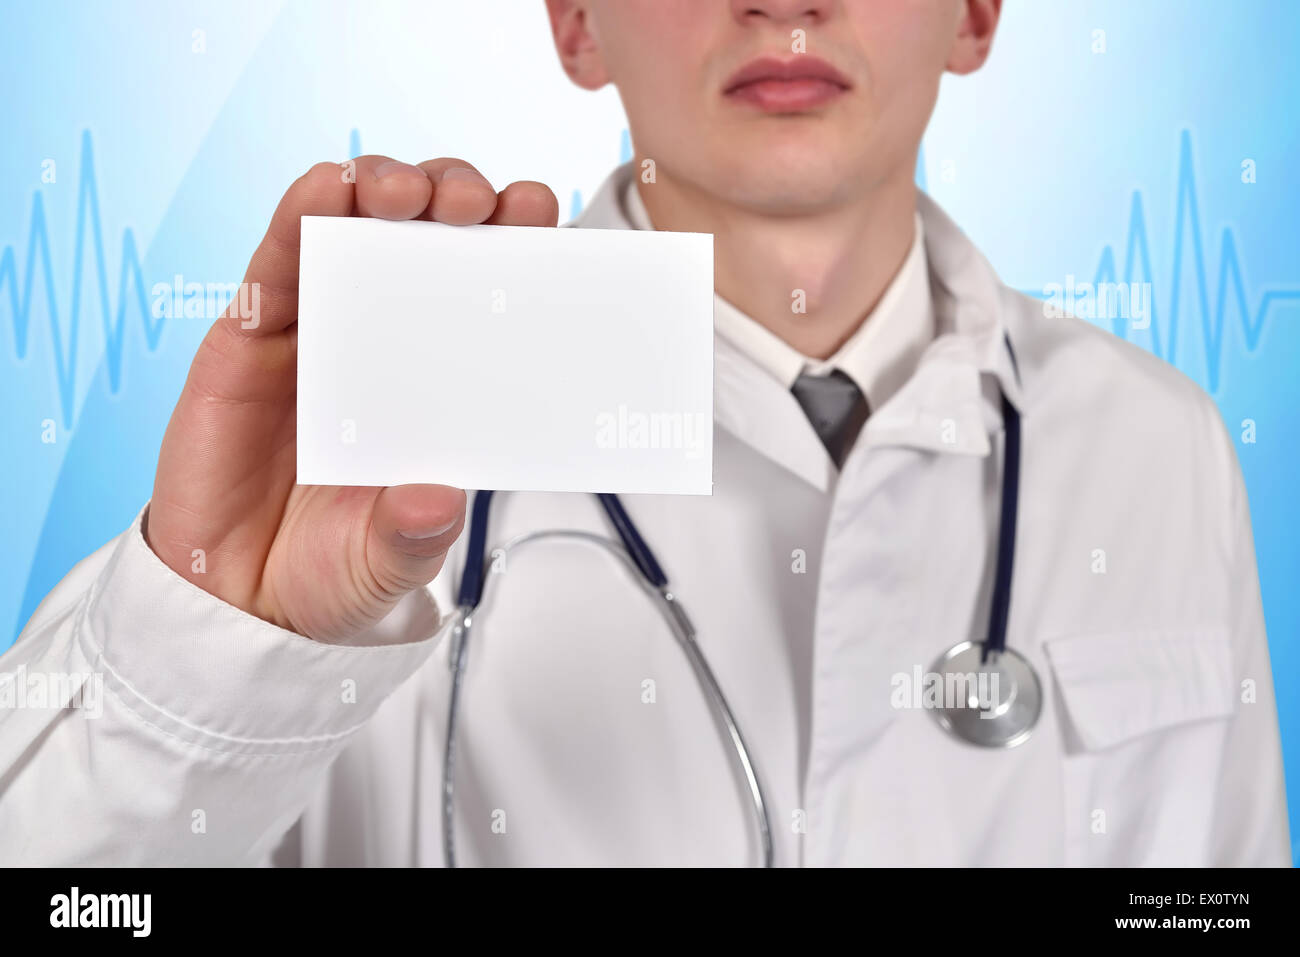 Medico con stetoscopio holding blank biglietto da visita Foto Stock